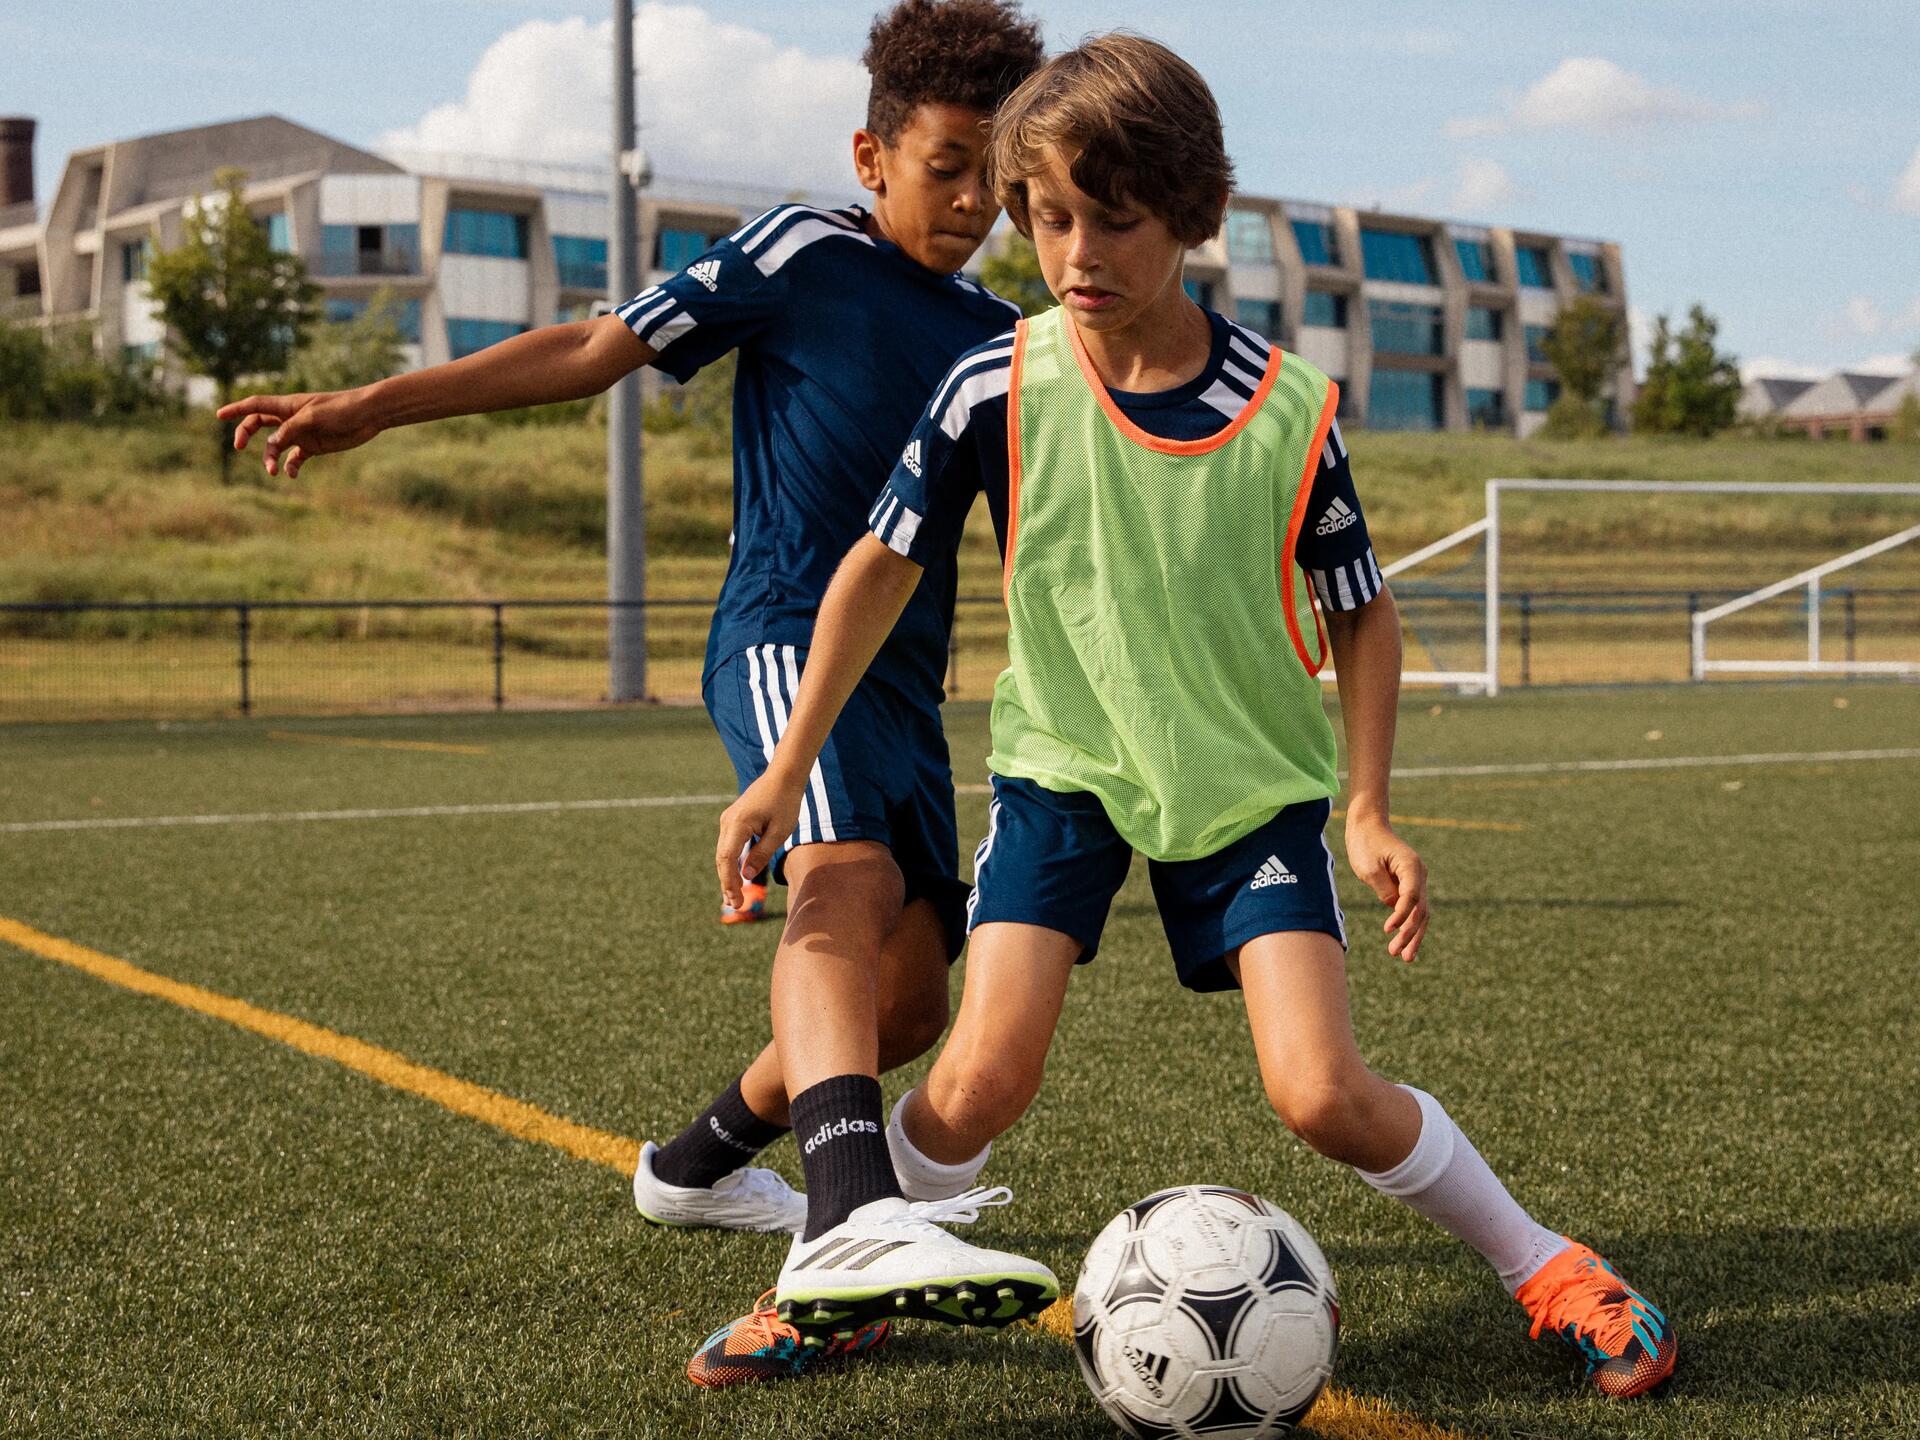 chłopcy grający w piłkę nożną ubrani w odzież piłkarską